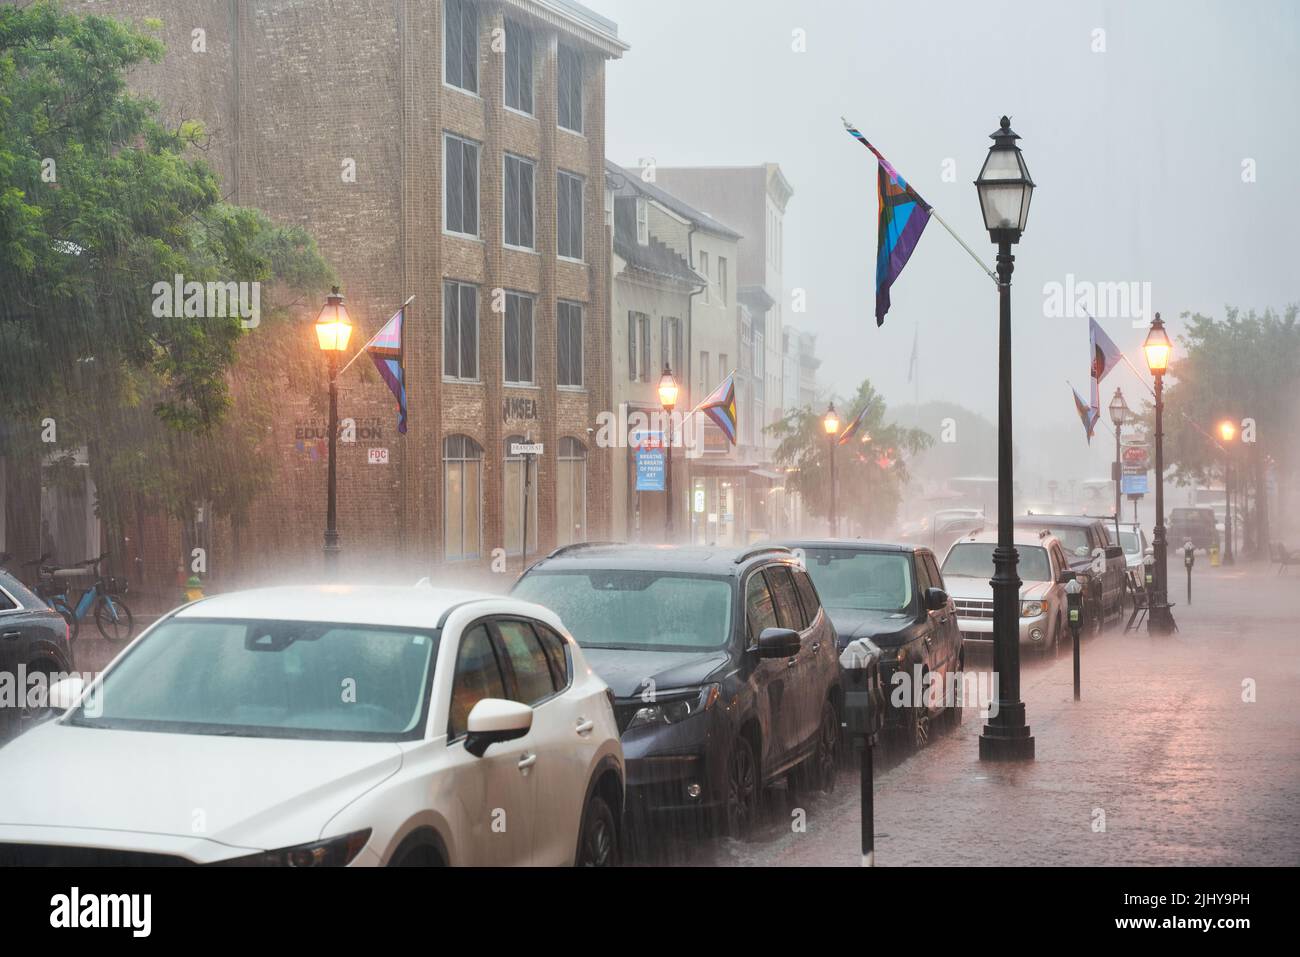 Forte pioggia estiva durante il giorno in città con illuminazione stradale accesa. Centro storico di Annapolis nel Maryland, Stati Uniti. Foto Stock